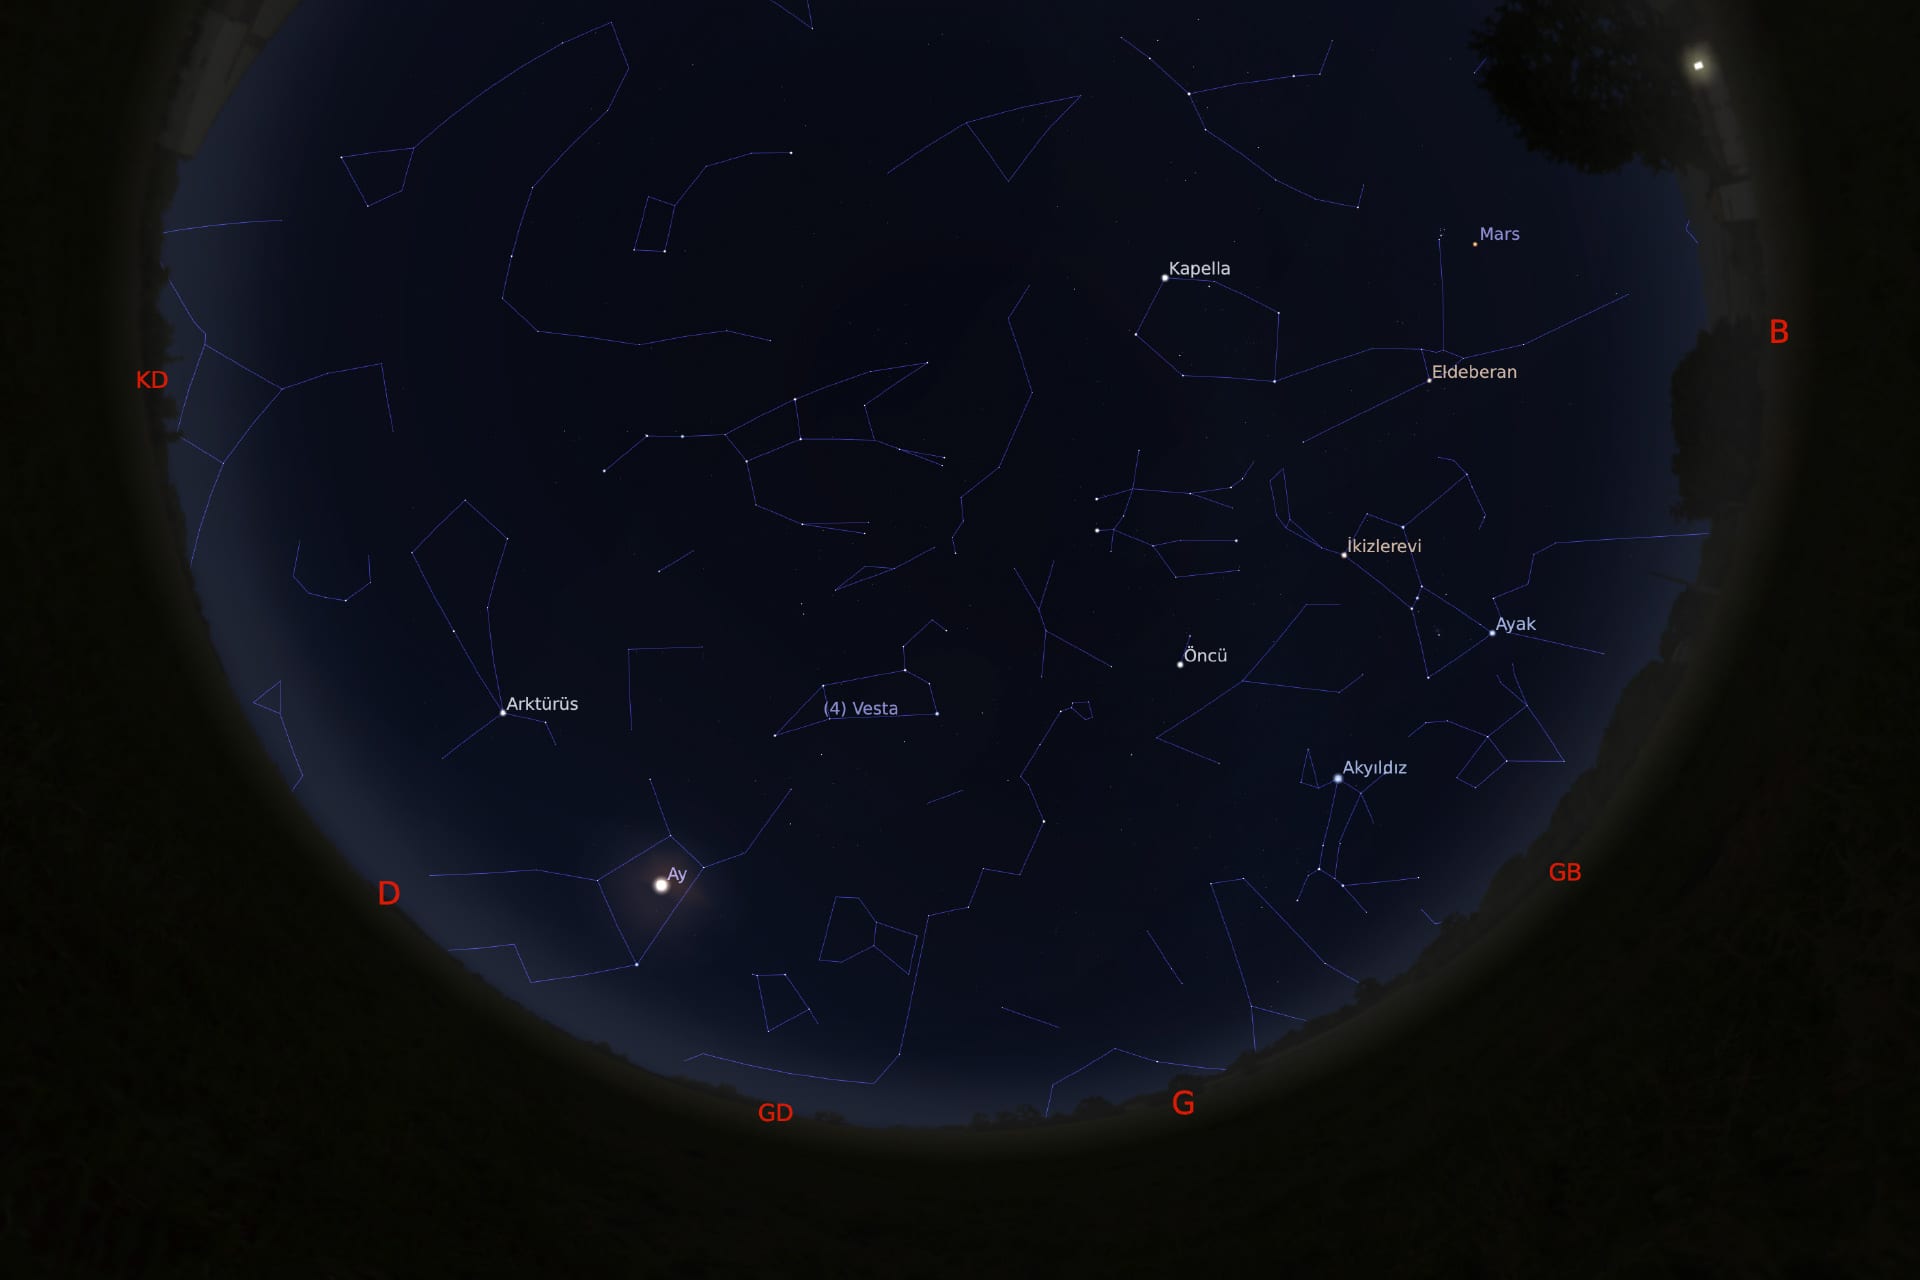 1 Mart 2021 - saat 23:30'daki gökyüzü görüntüsü